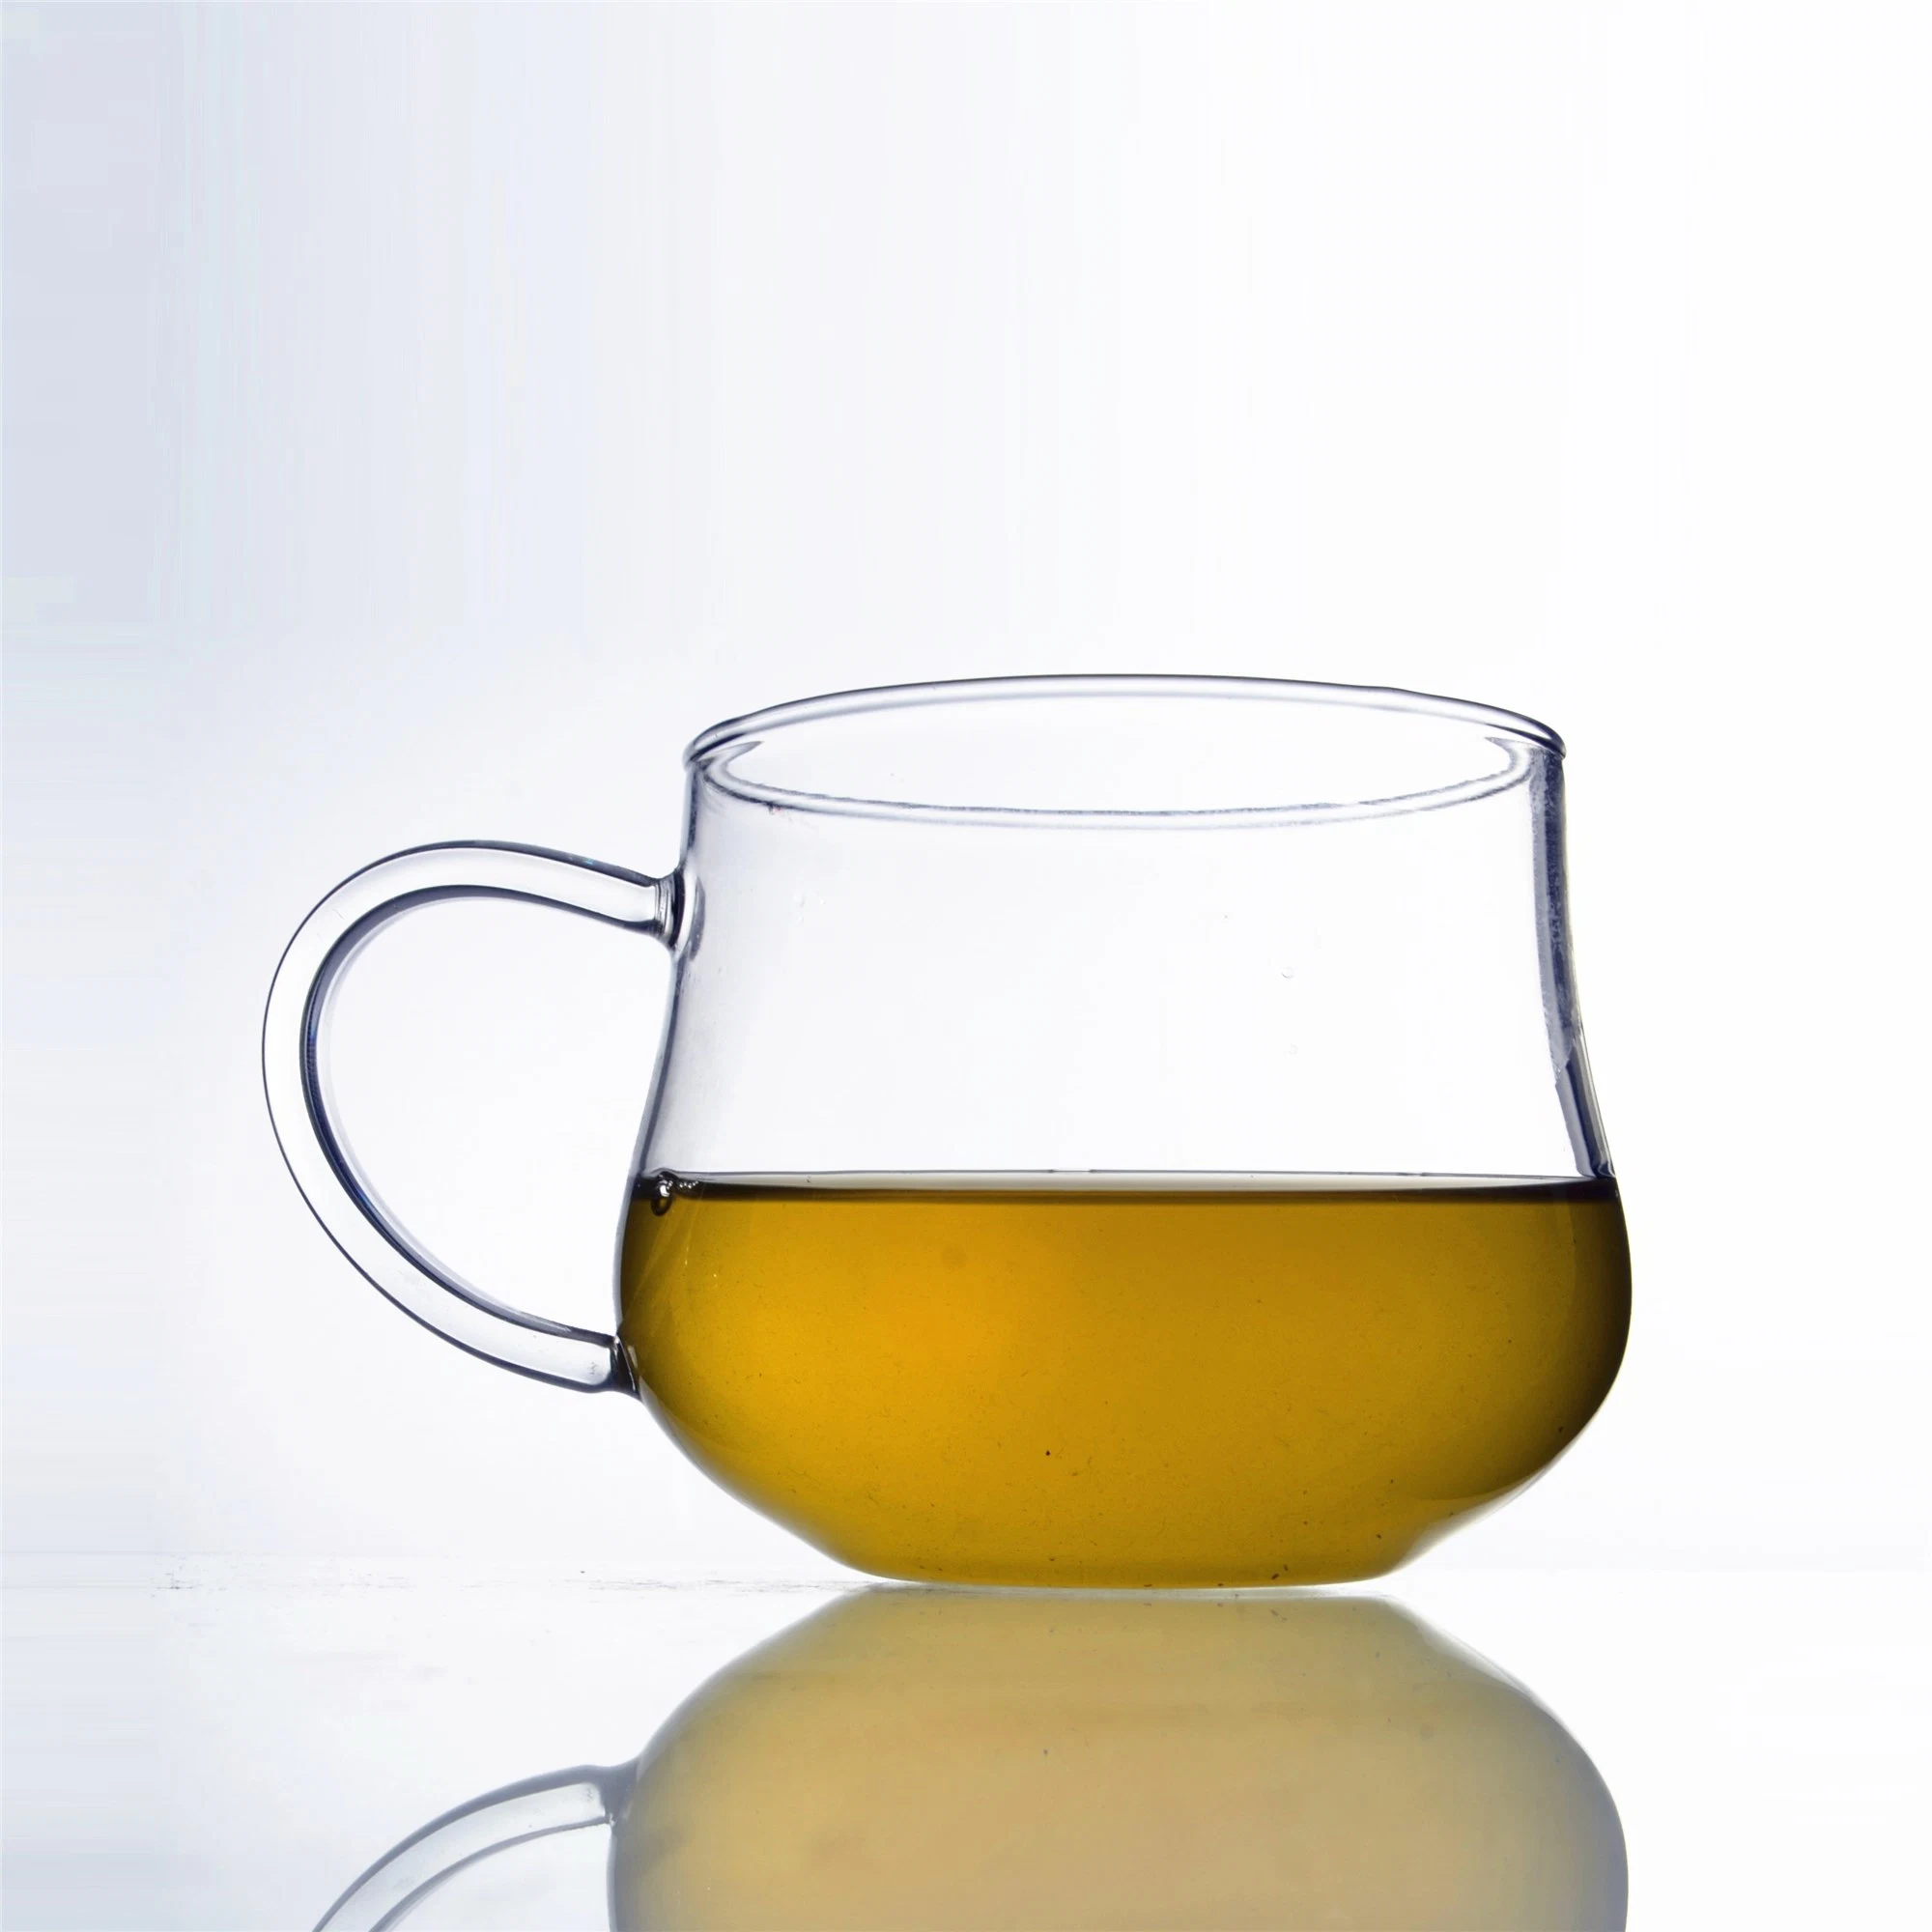 كوب زجاجي من القهوة/الشاي عالي الجودة مع كوب زجاجي زجاجي مع مقبض